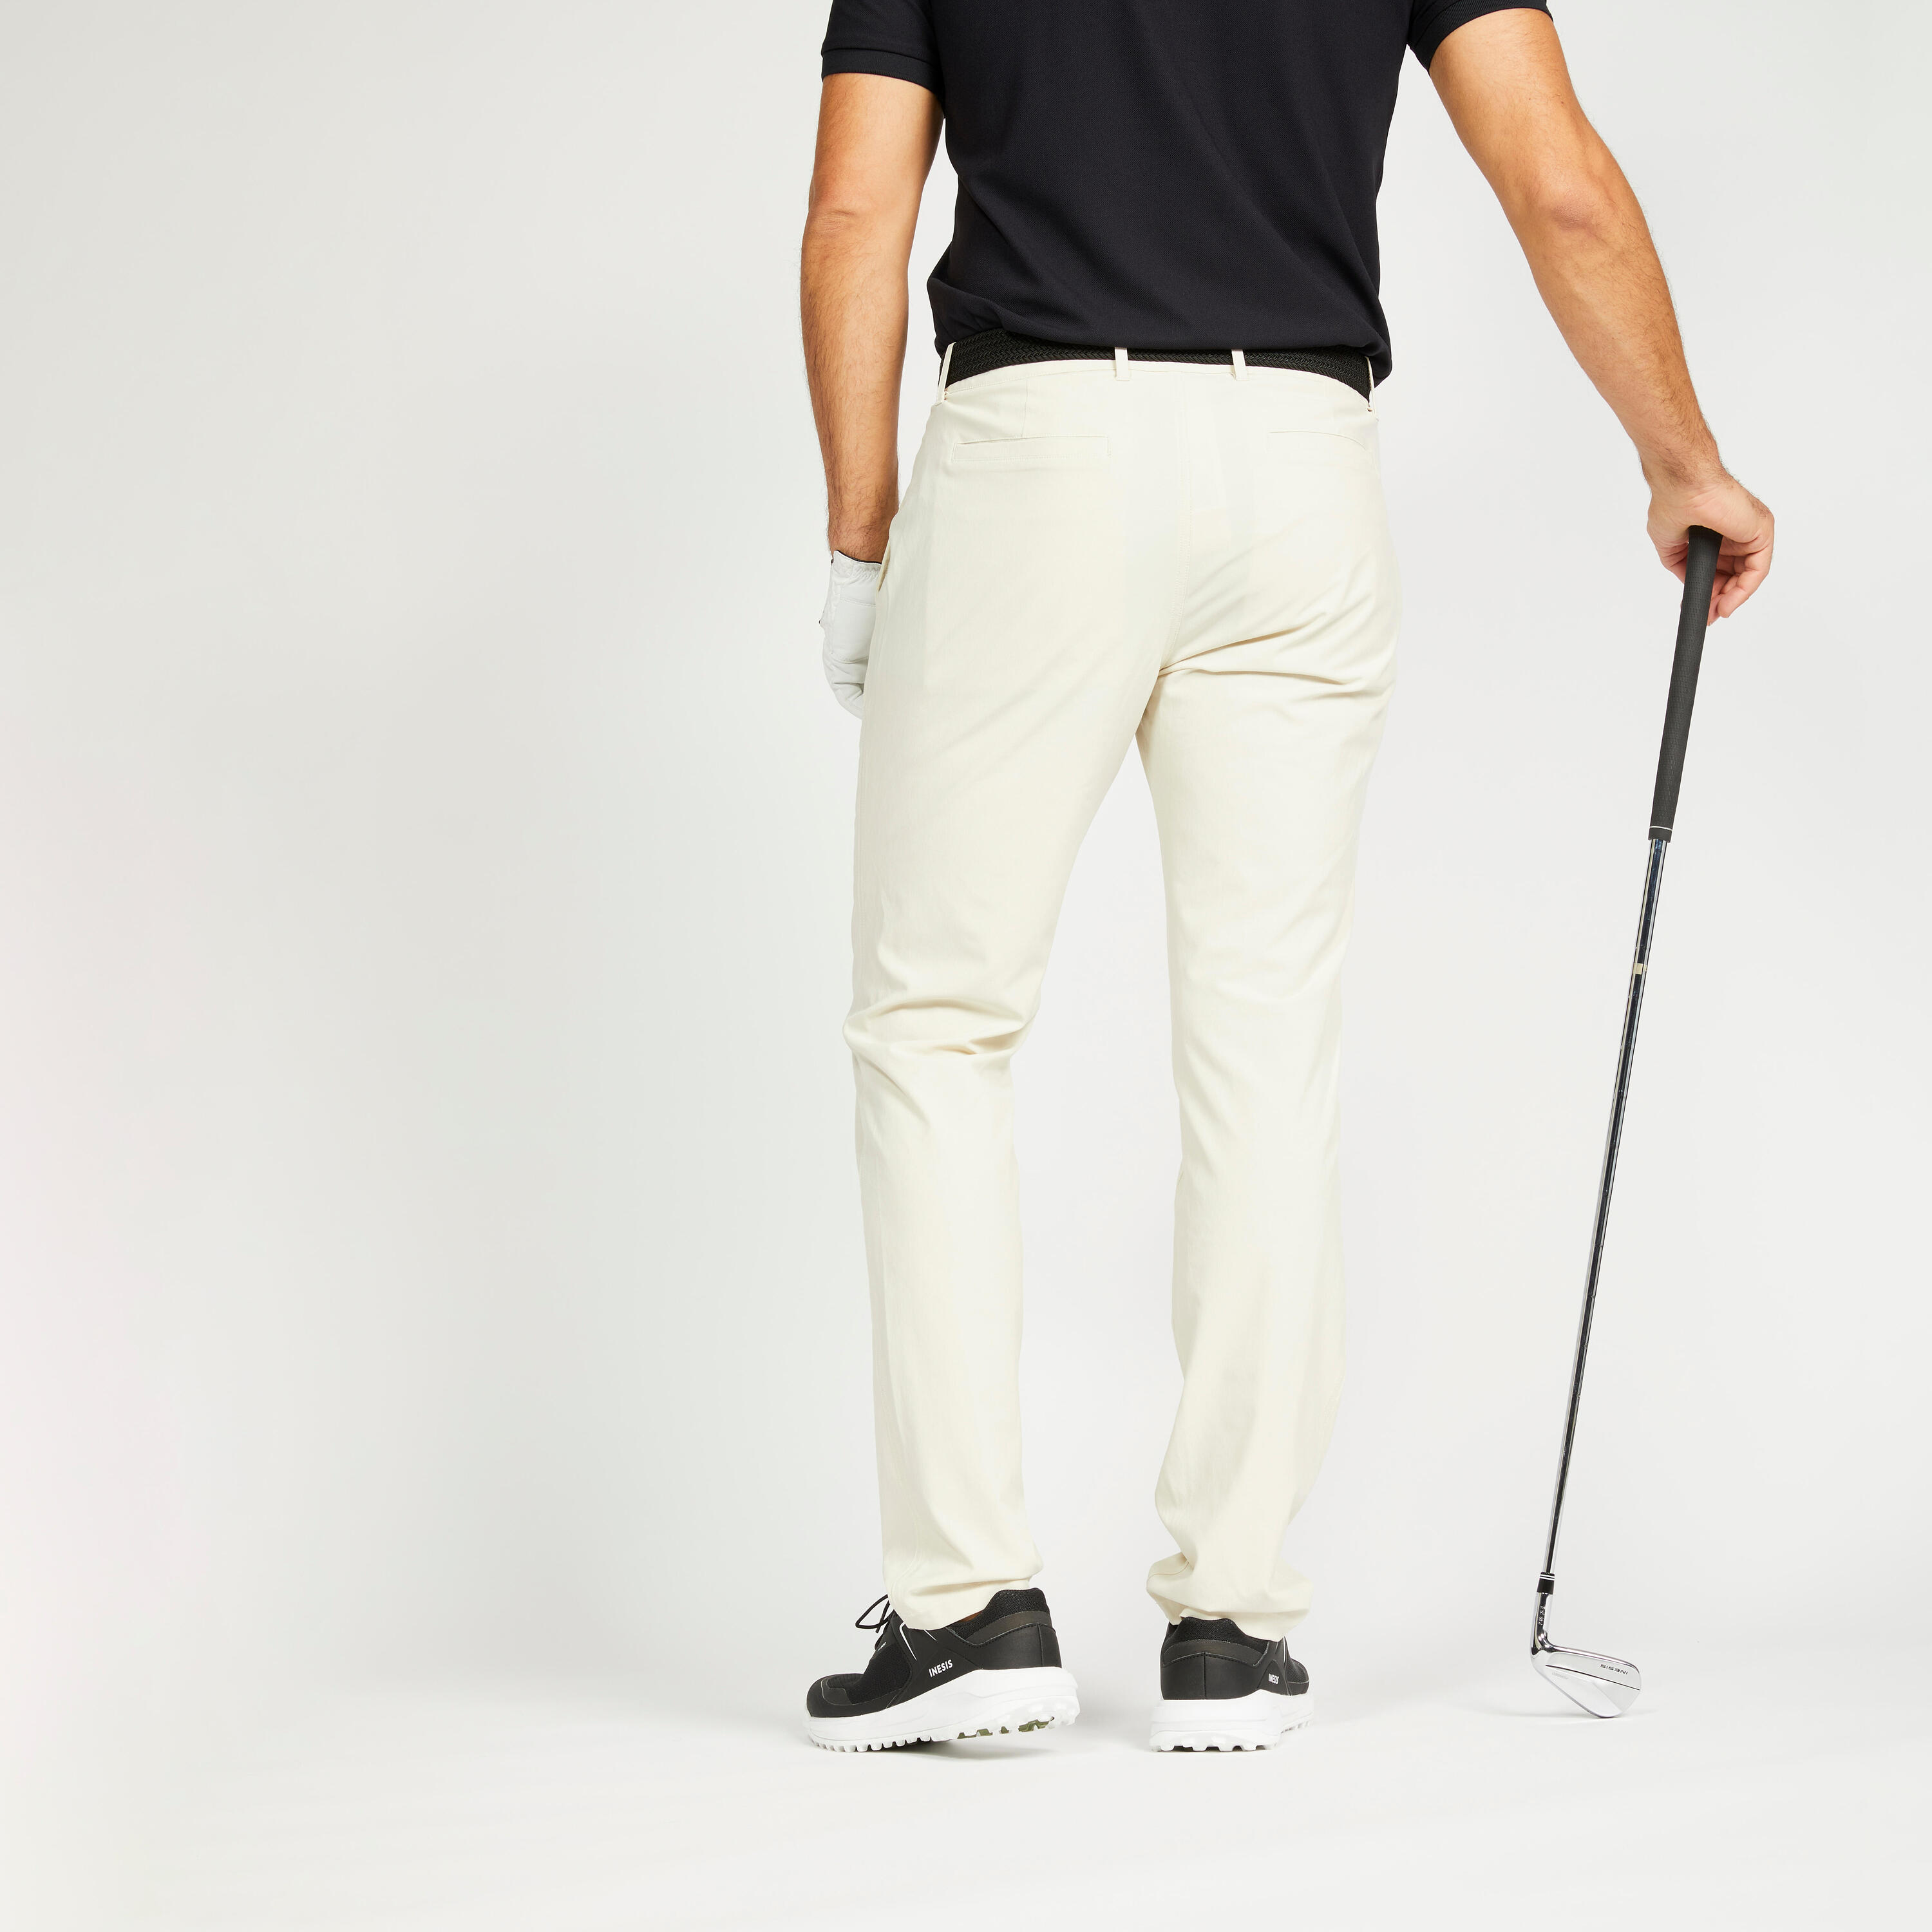 Men's golf trousers - WW 500 light beige 2/3